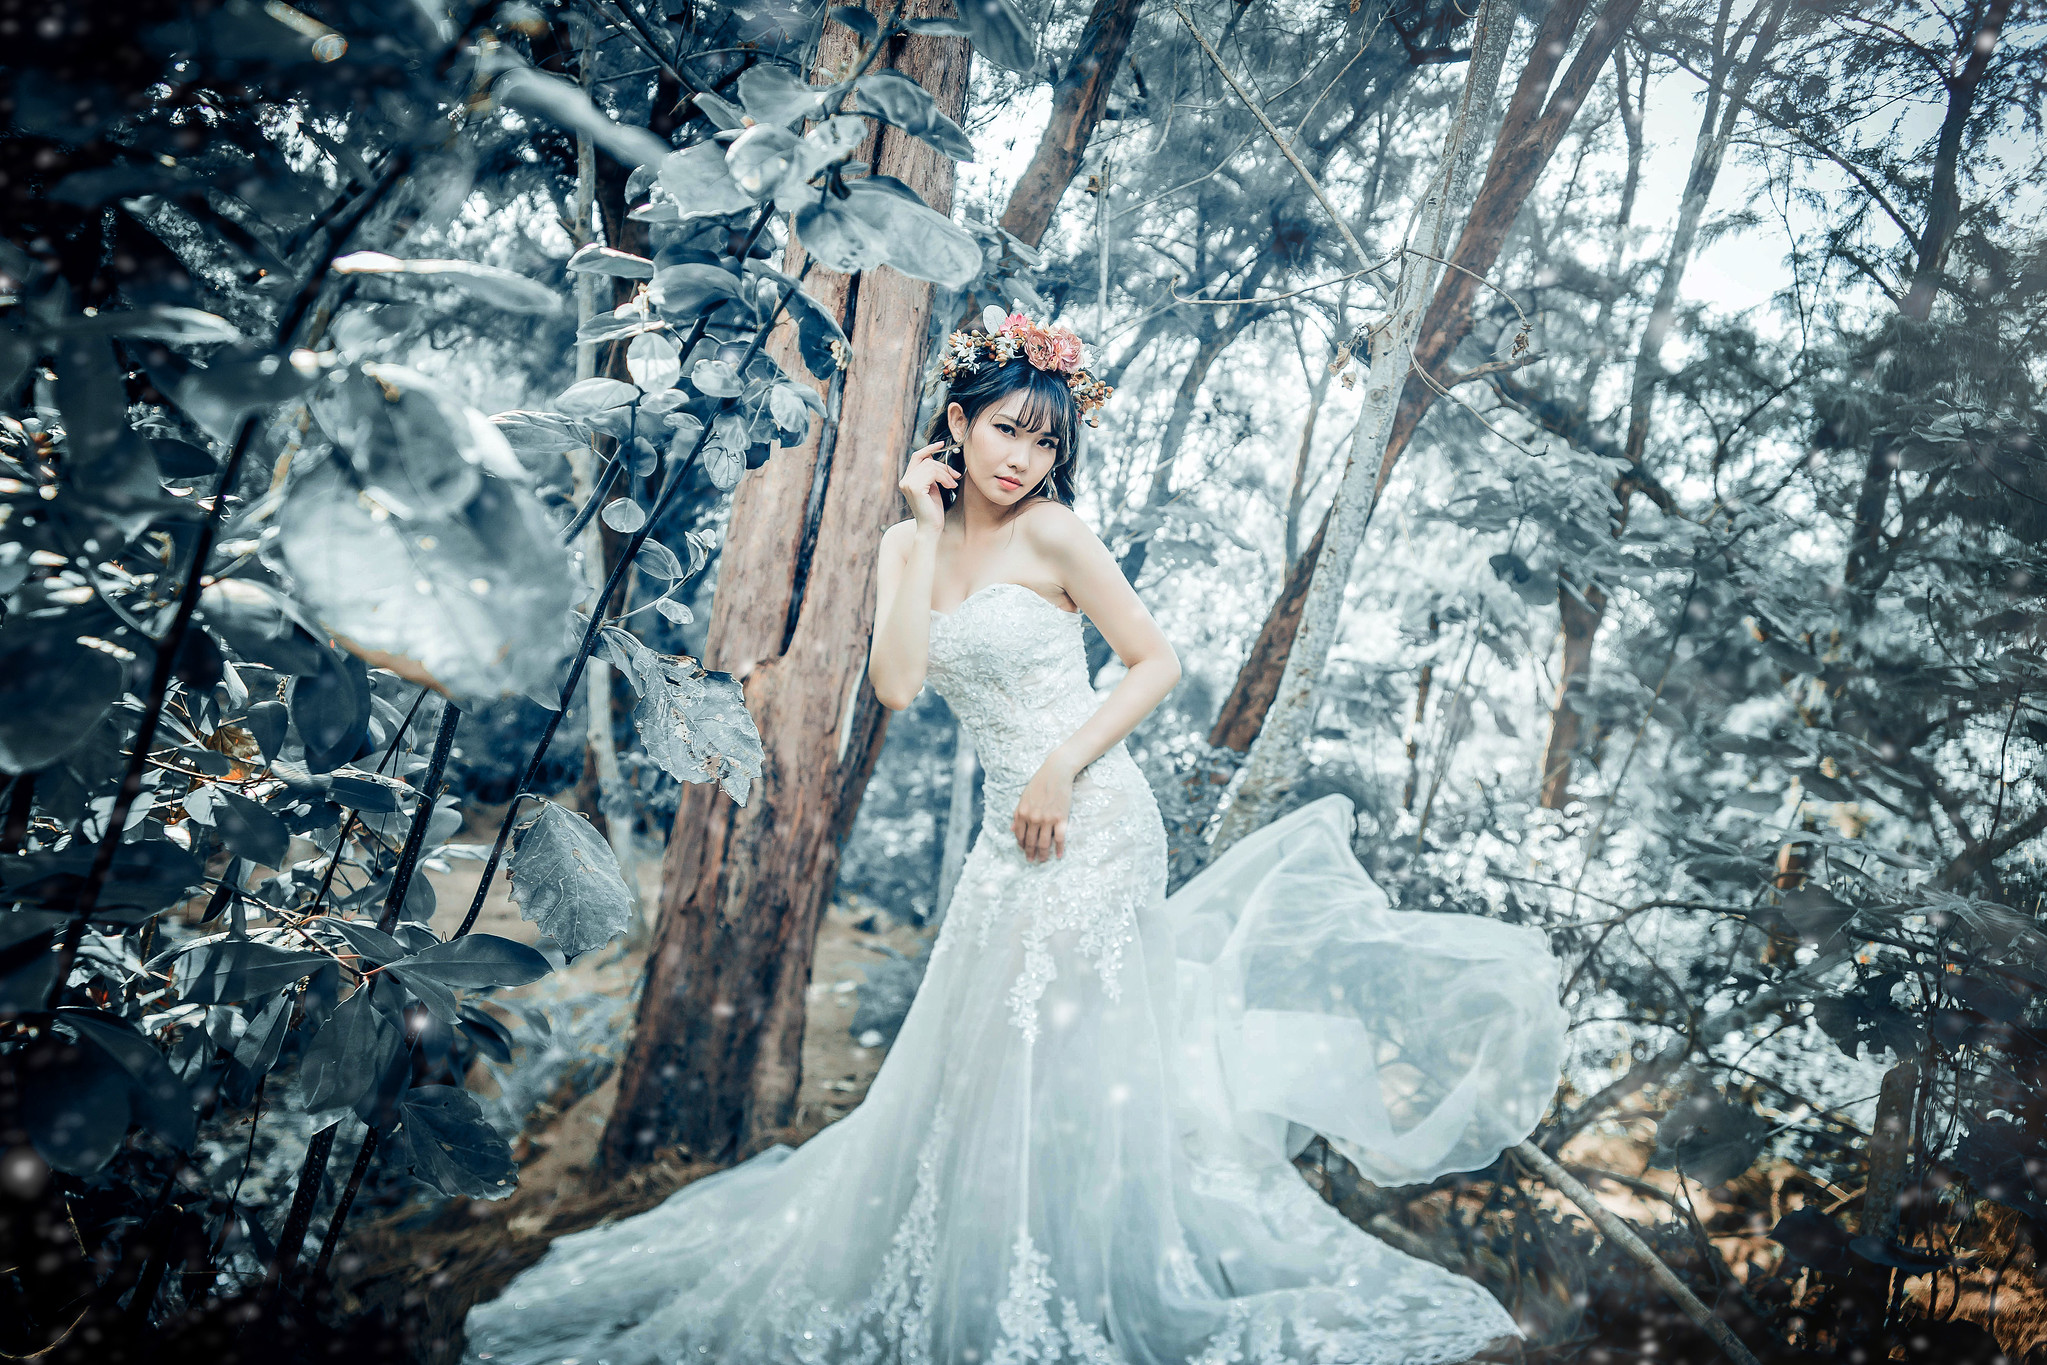 Asian Model Women Women Outdoors Black Hair Flower Crown Dress White Dress White Clothing Plants Tre 2047x1365